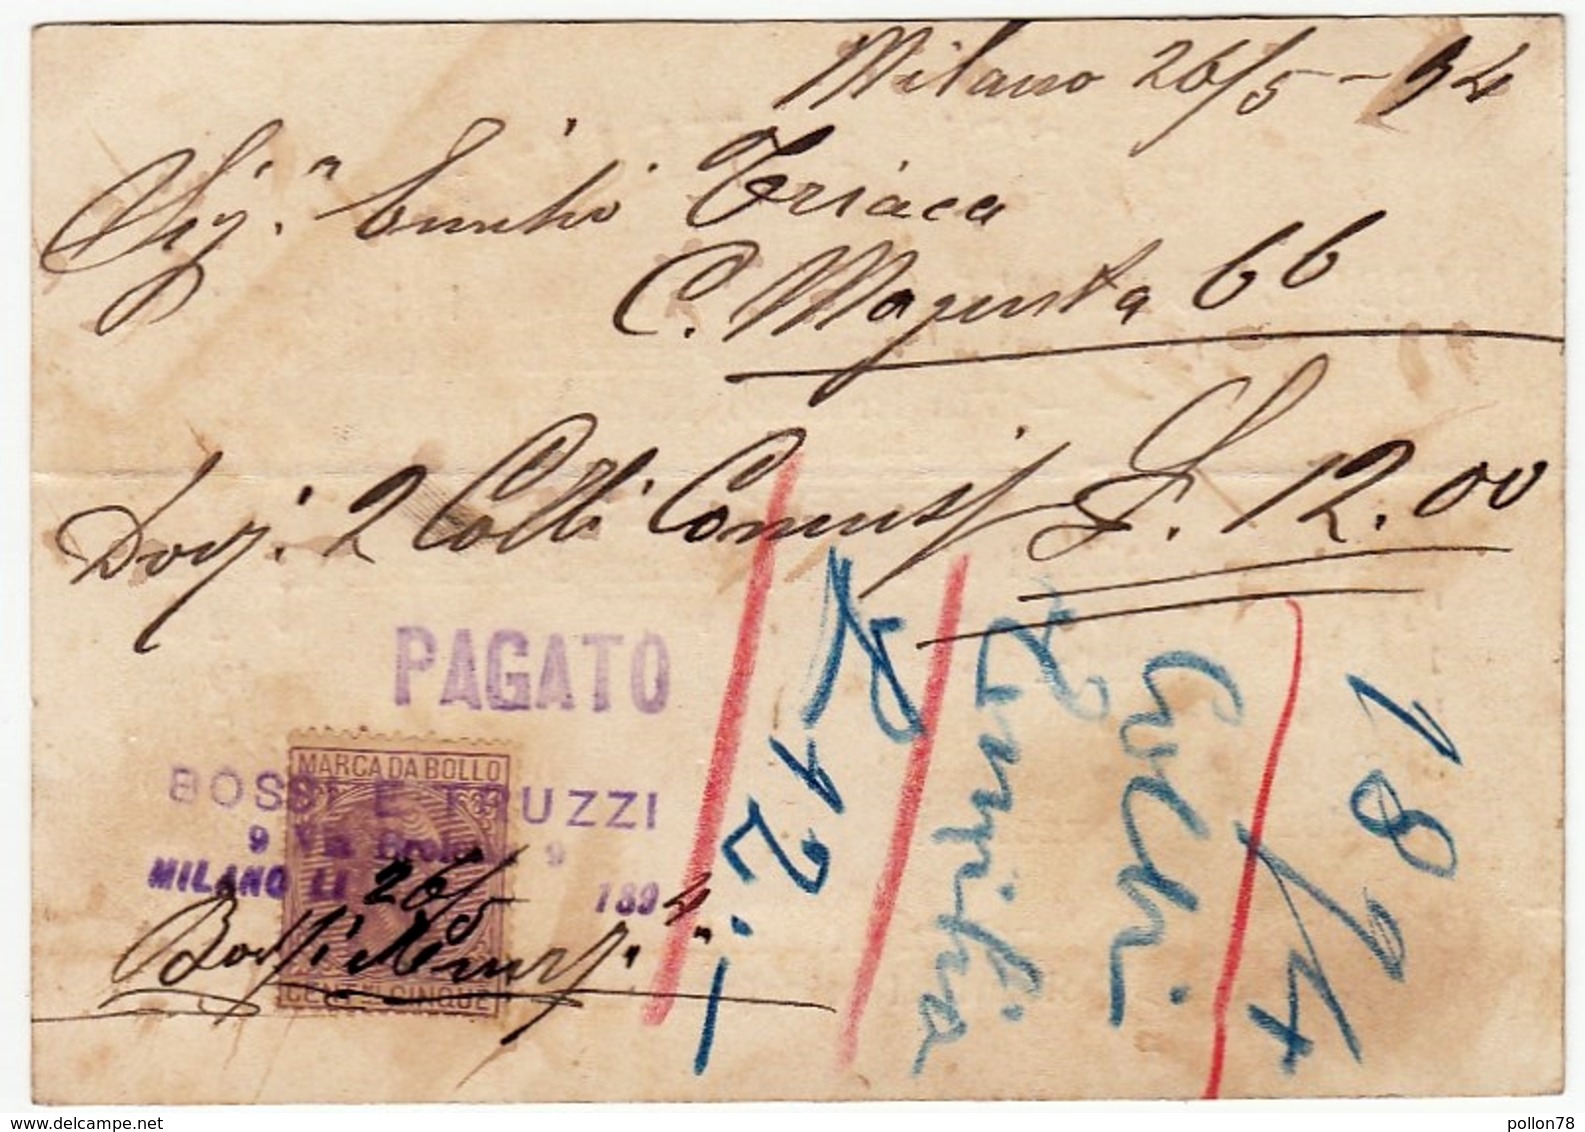 CARTONCINO - RICEVUTA - BIGLIETTO DA VISITA - BOSSI E TRUZZI - MILANO - 1894 - Vedi Retro - Cartoncini Da Visita